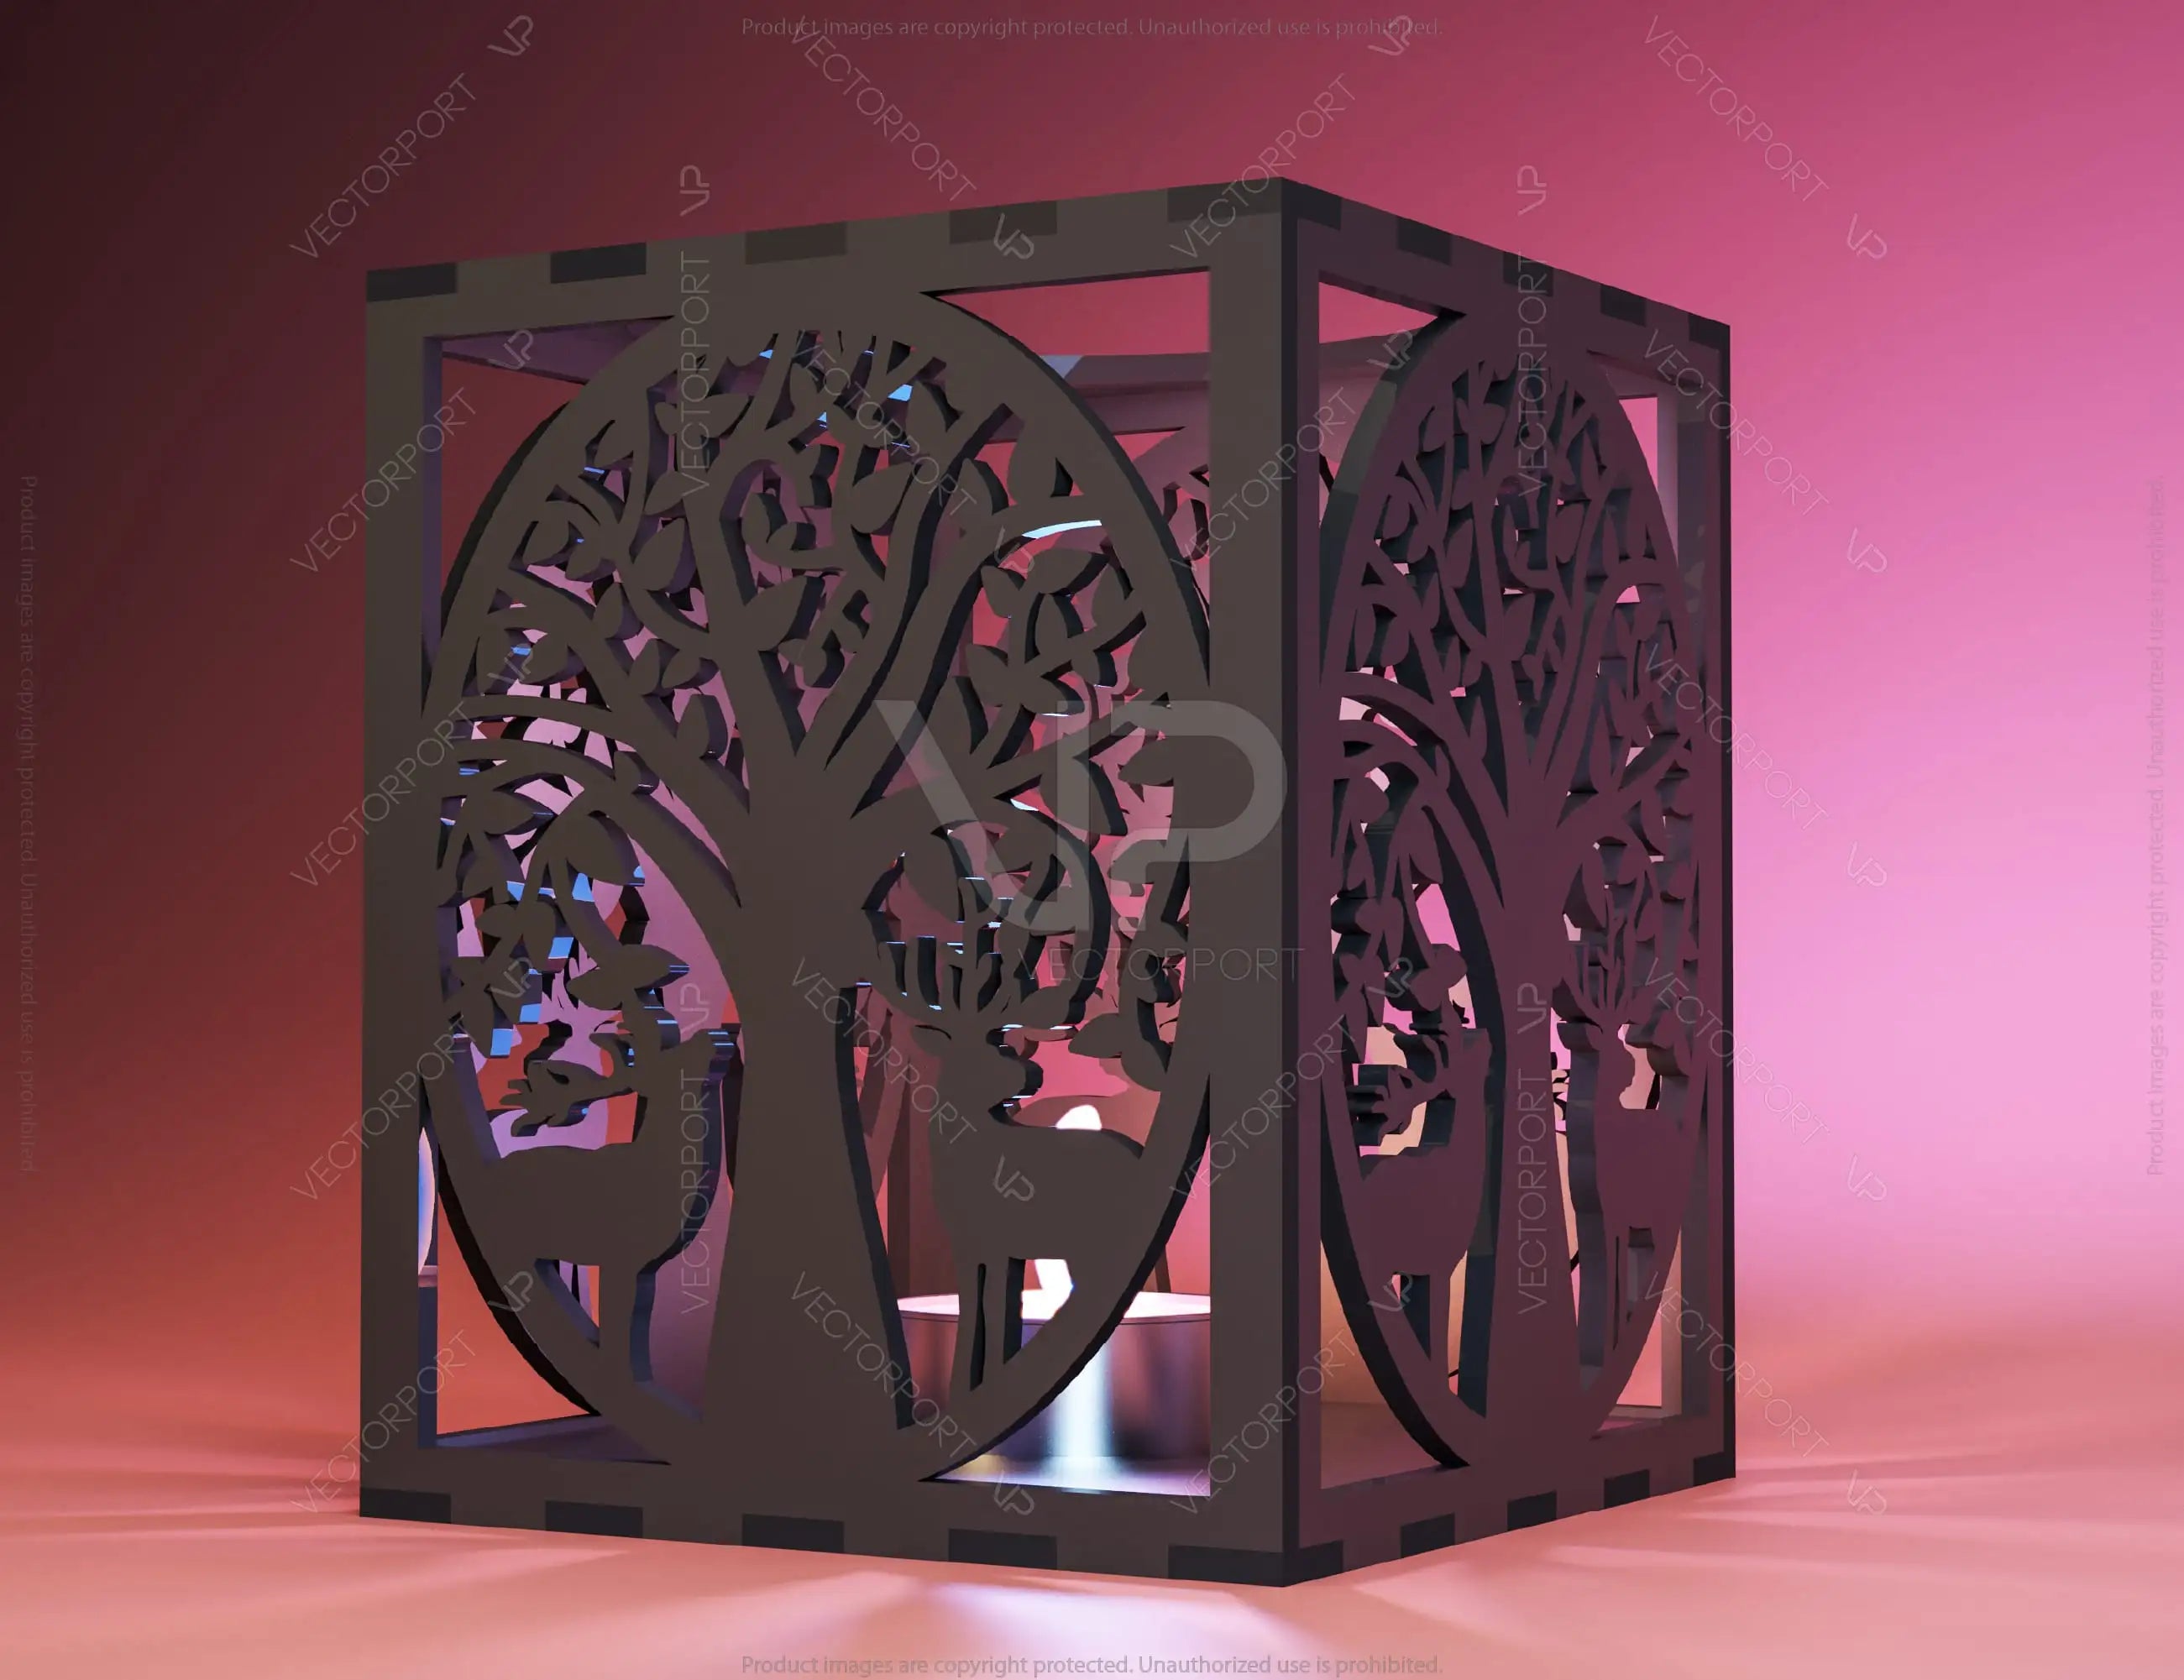 Candle Holder Laser Cut plywood Tea light Forest Theme with Deer Lantern Votive Gift  Wooden Lantern Digital Download SVG |#222|